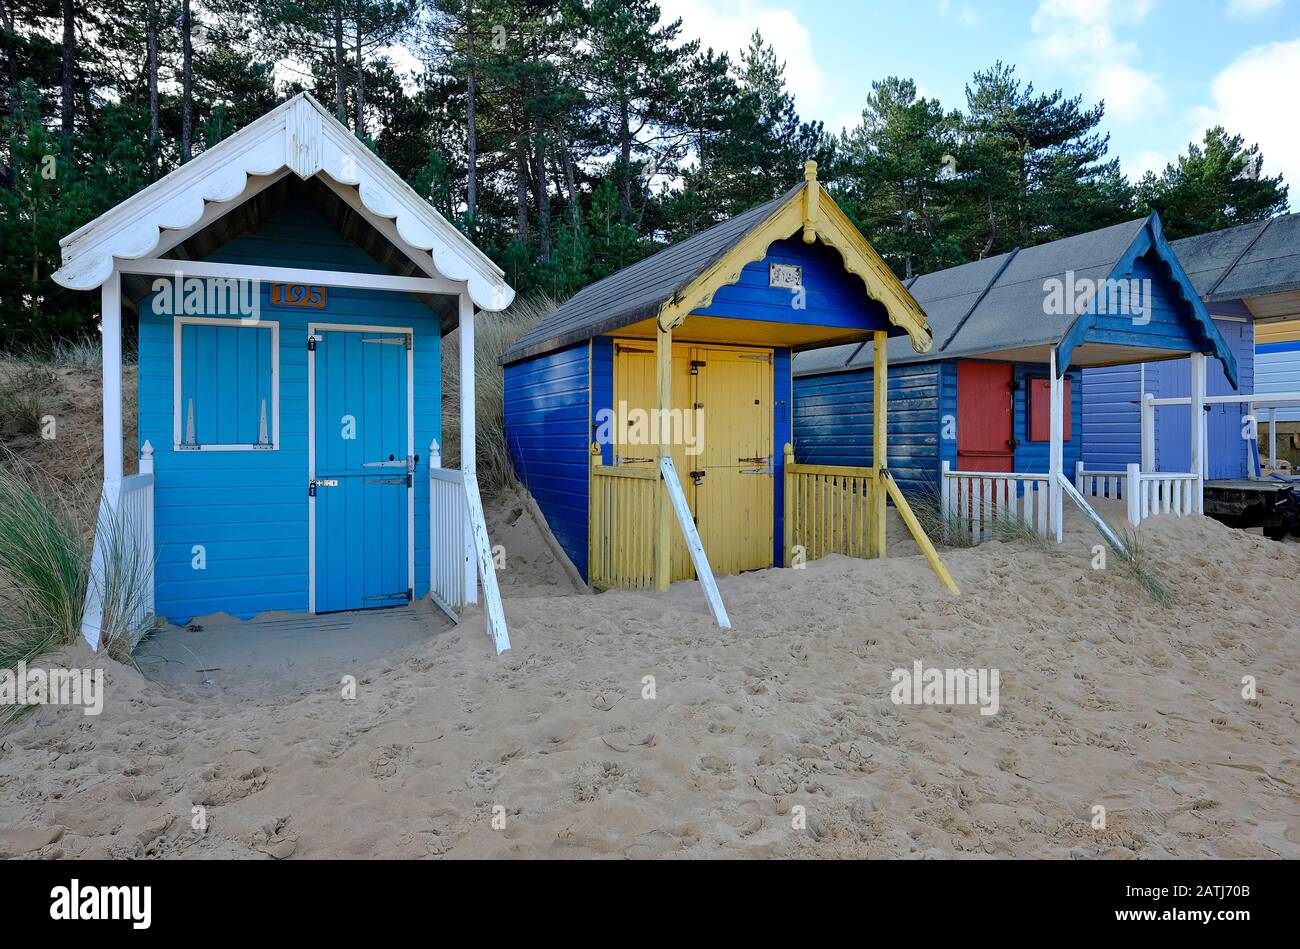 dévastation de sable sur les huttes de plage, puits-next-the-sea, nord norfolk, angleterre Banque D'Images